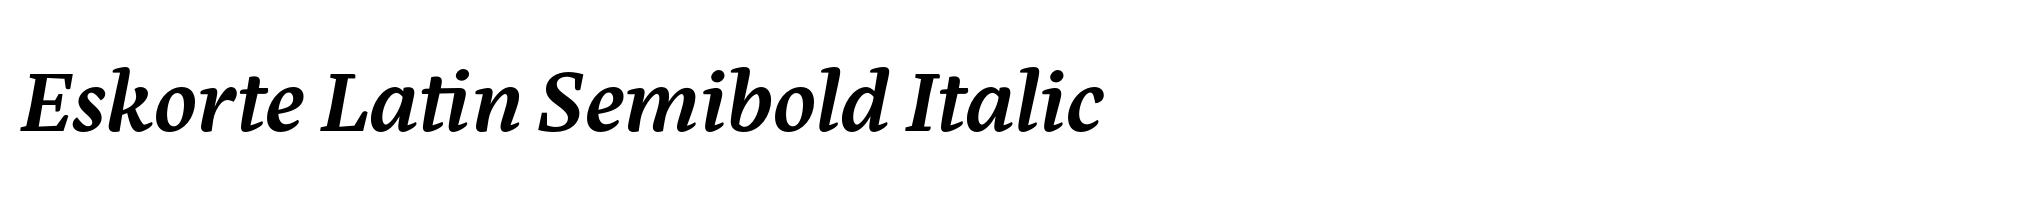 Eskorte Latin Semibold Italic image